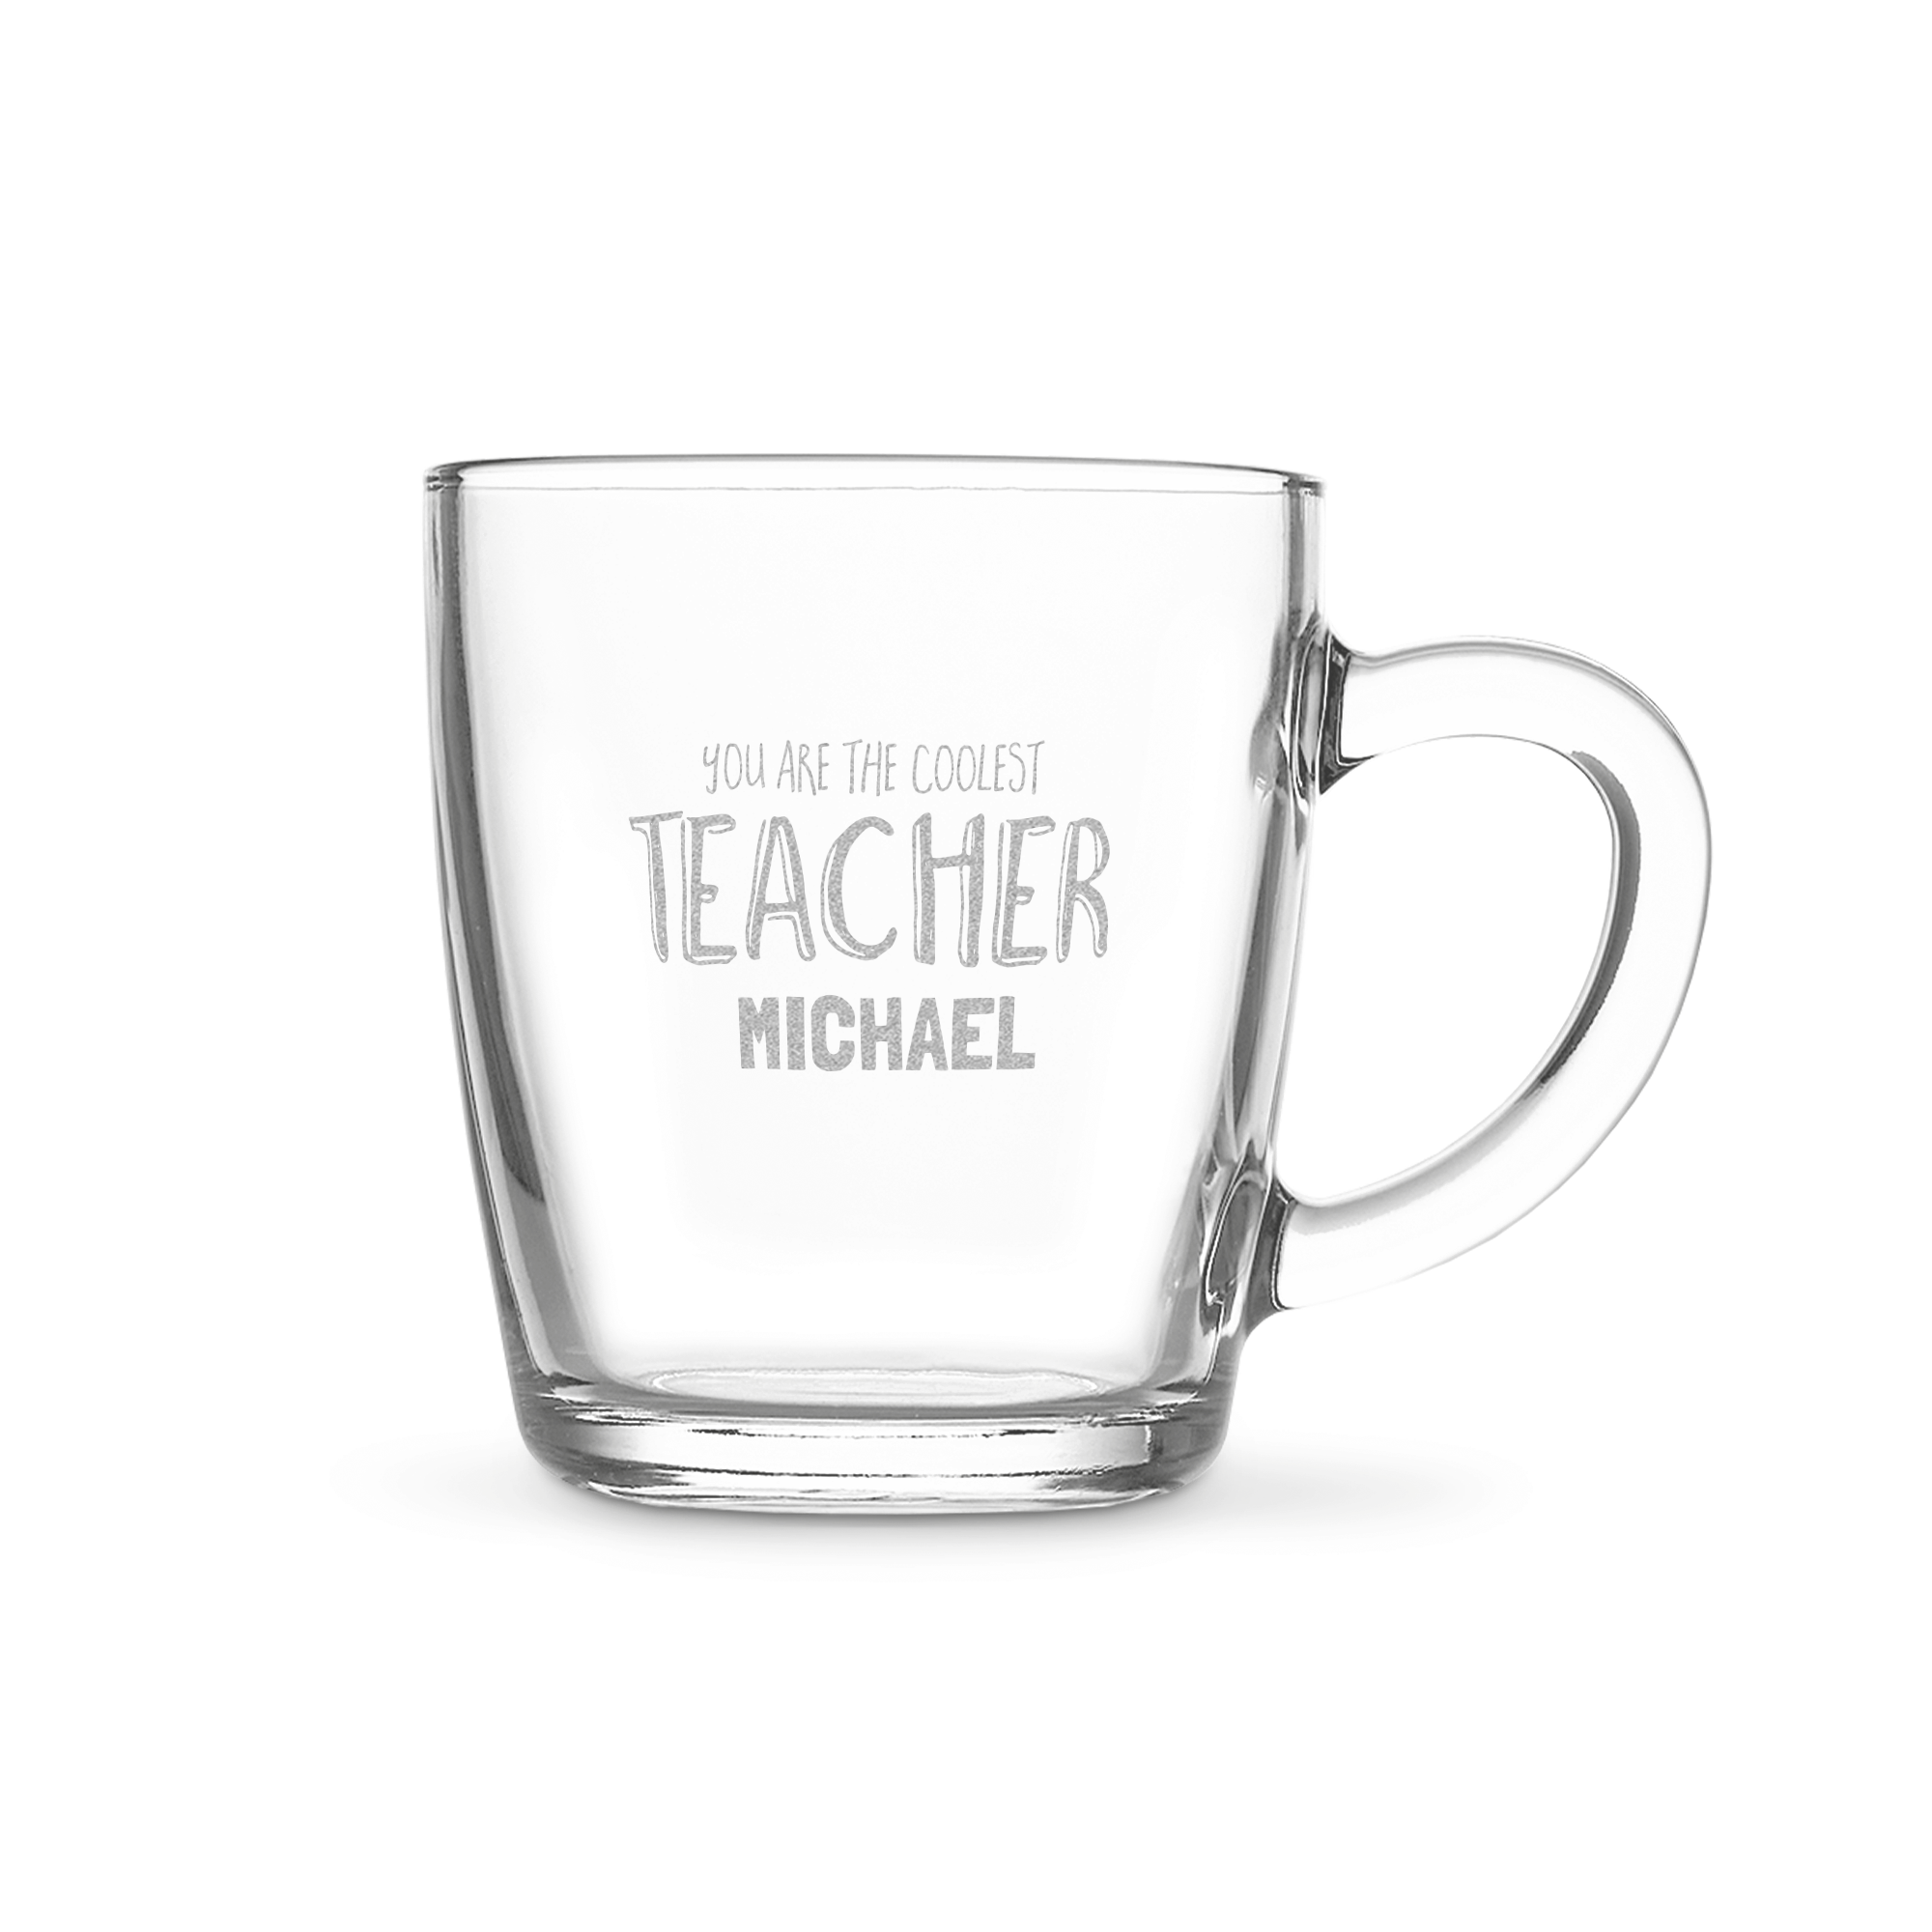 Te glas - Lærer